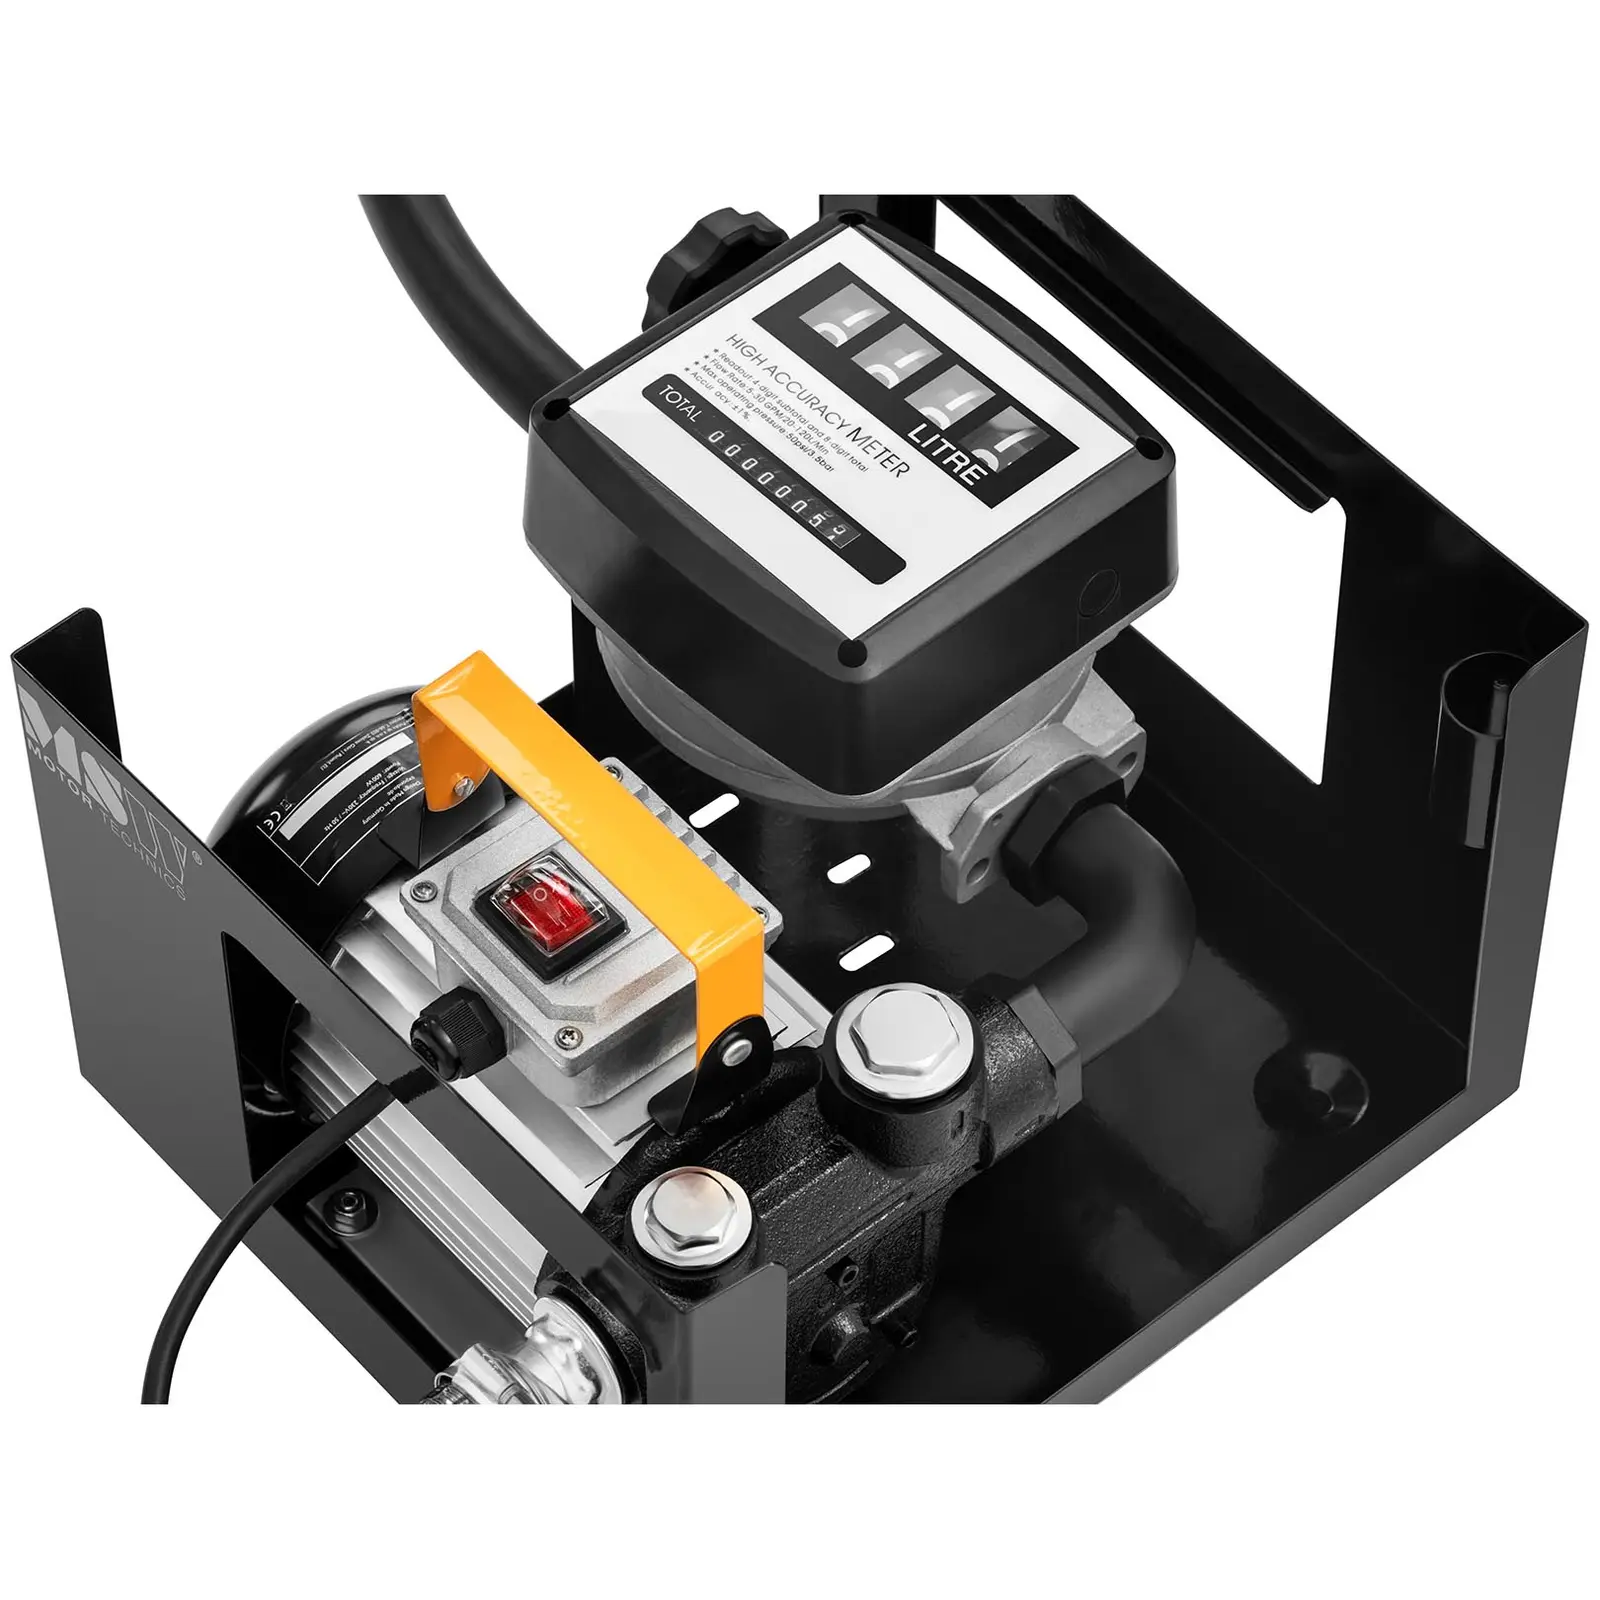 Diesel Power 600-4-1 Pumpe mit Zähler, Saug- und Druckschlauch,  Automatik-Zapf-Pistole und Zubehör